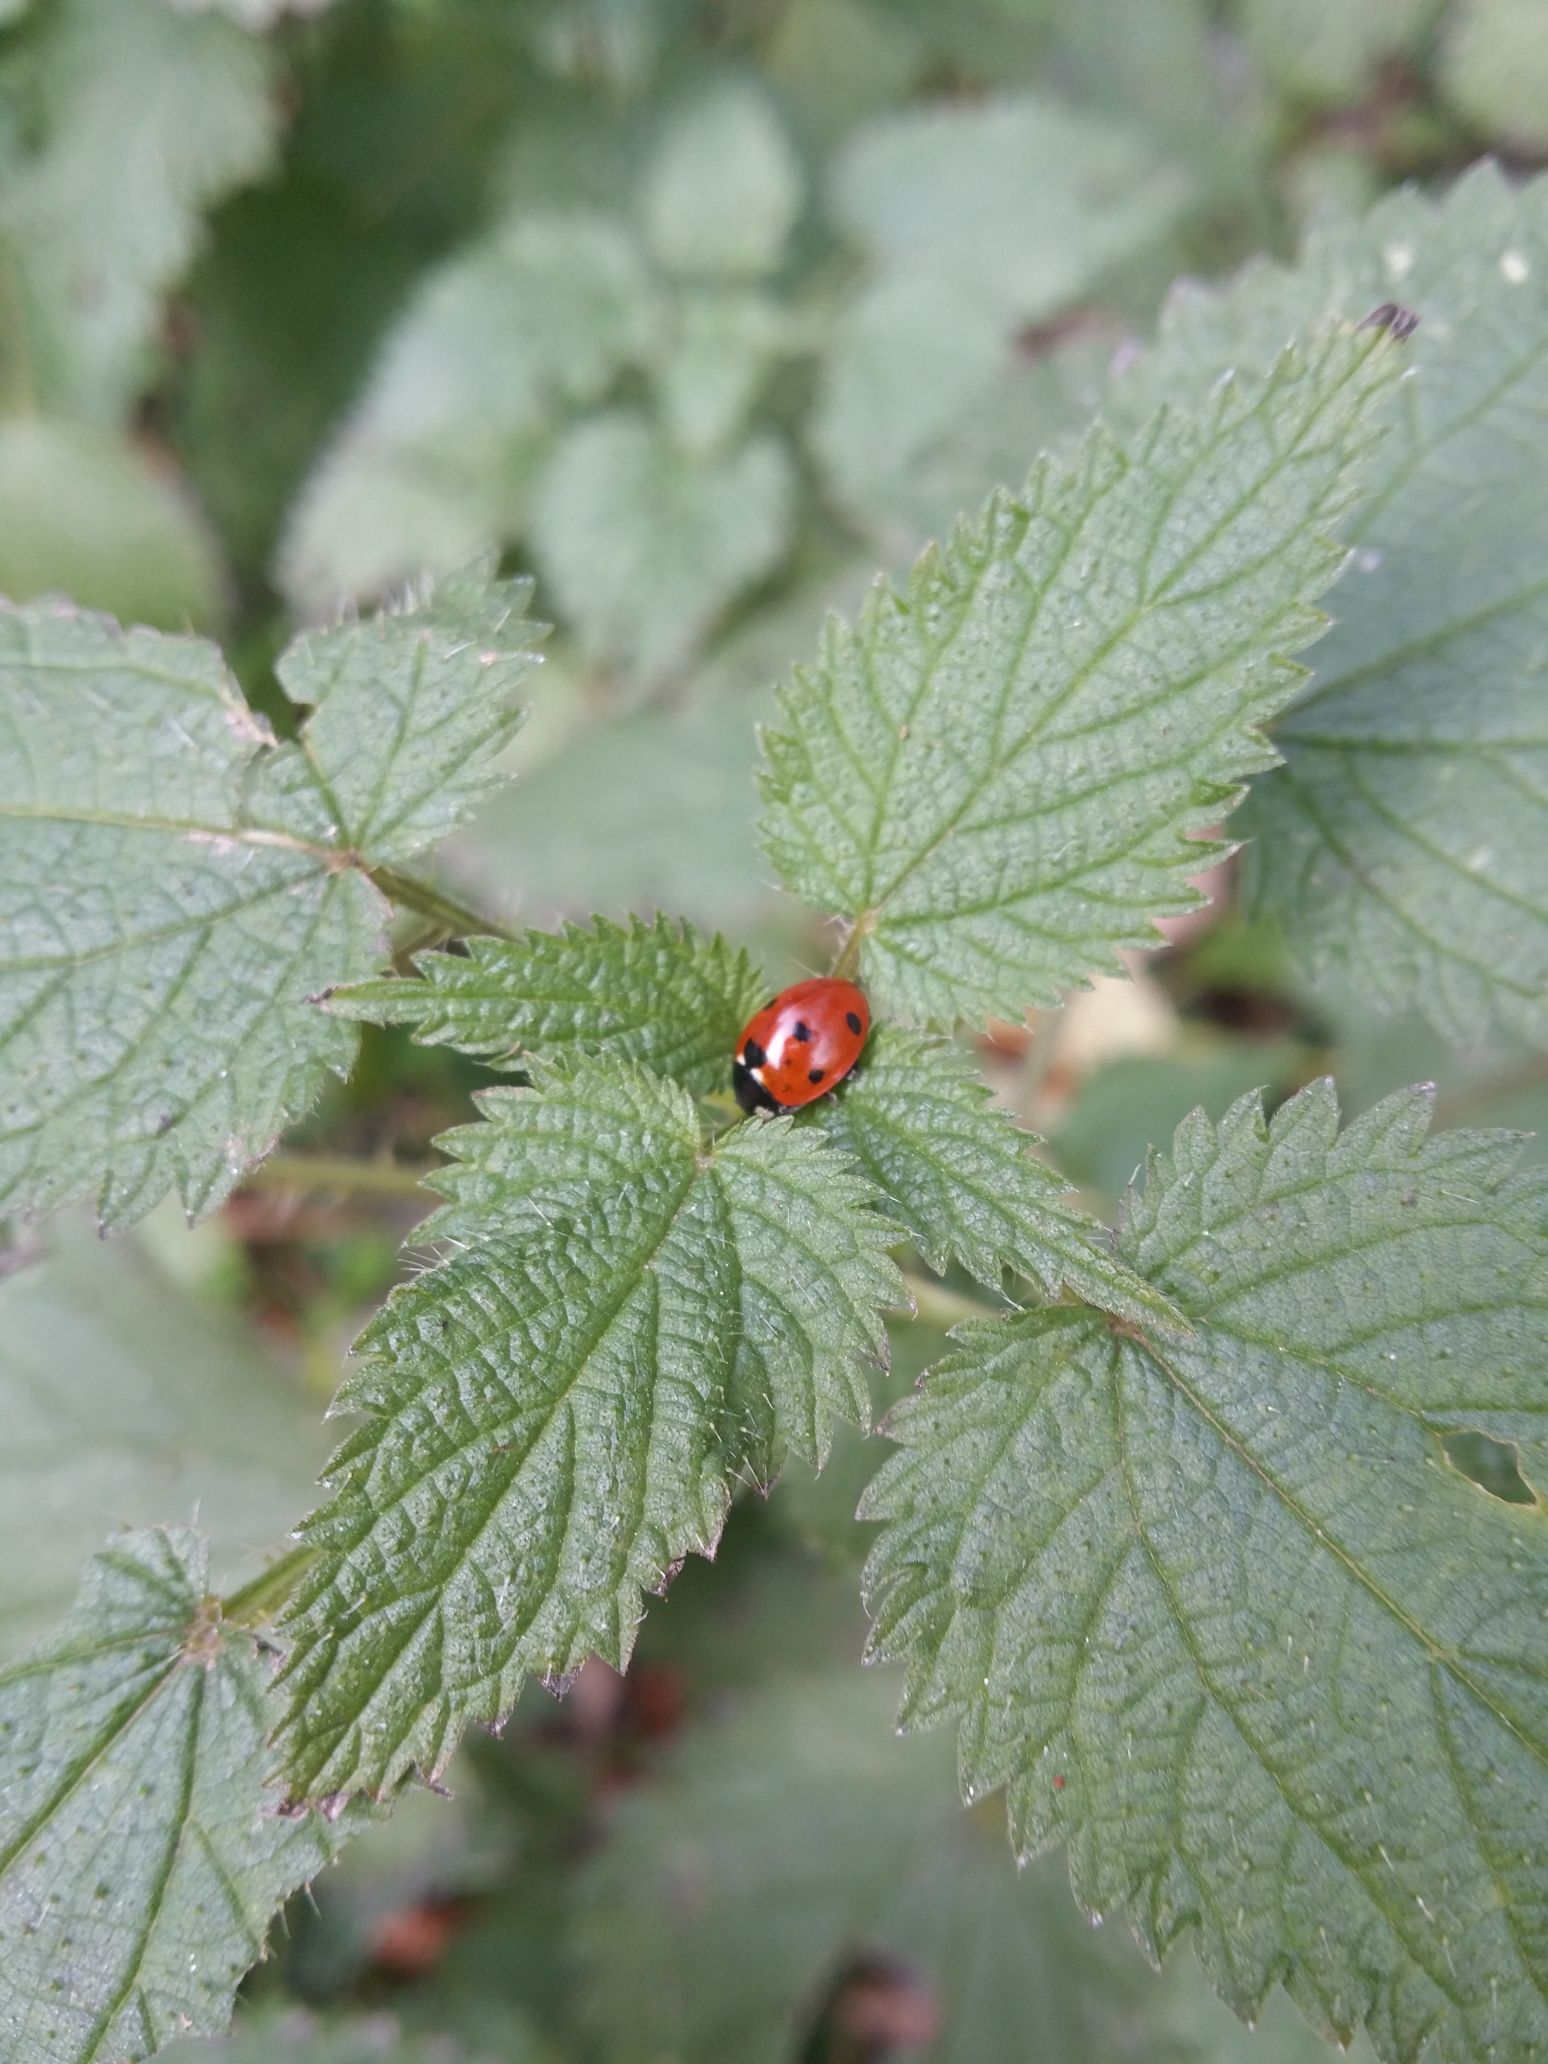 late ladybug